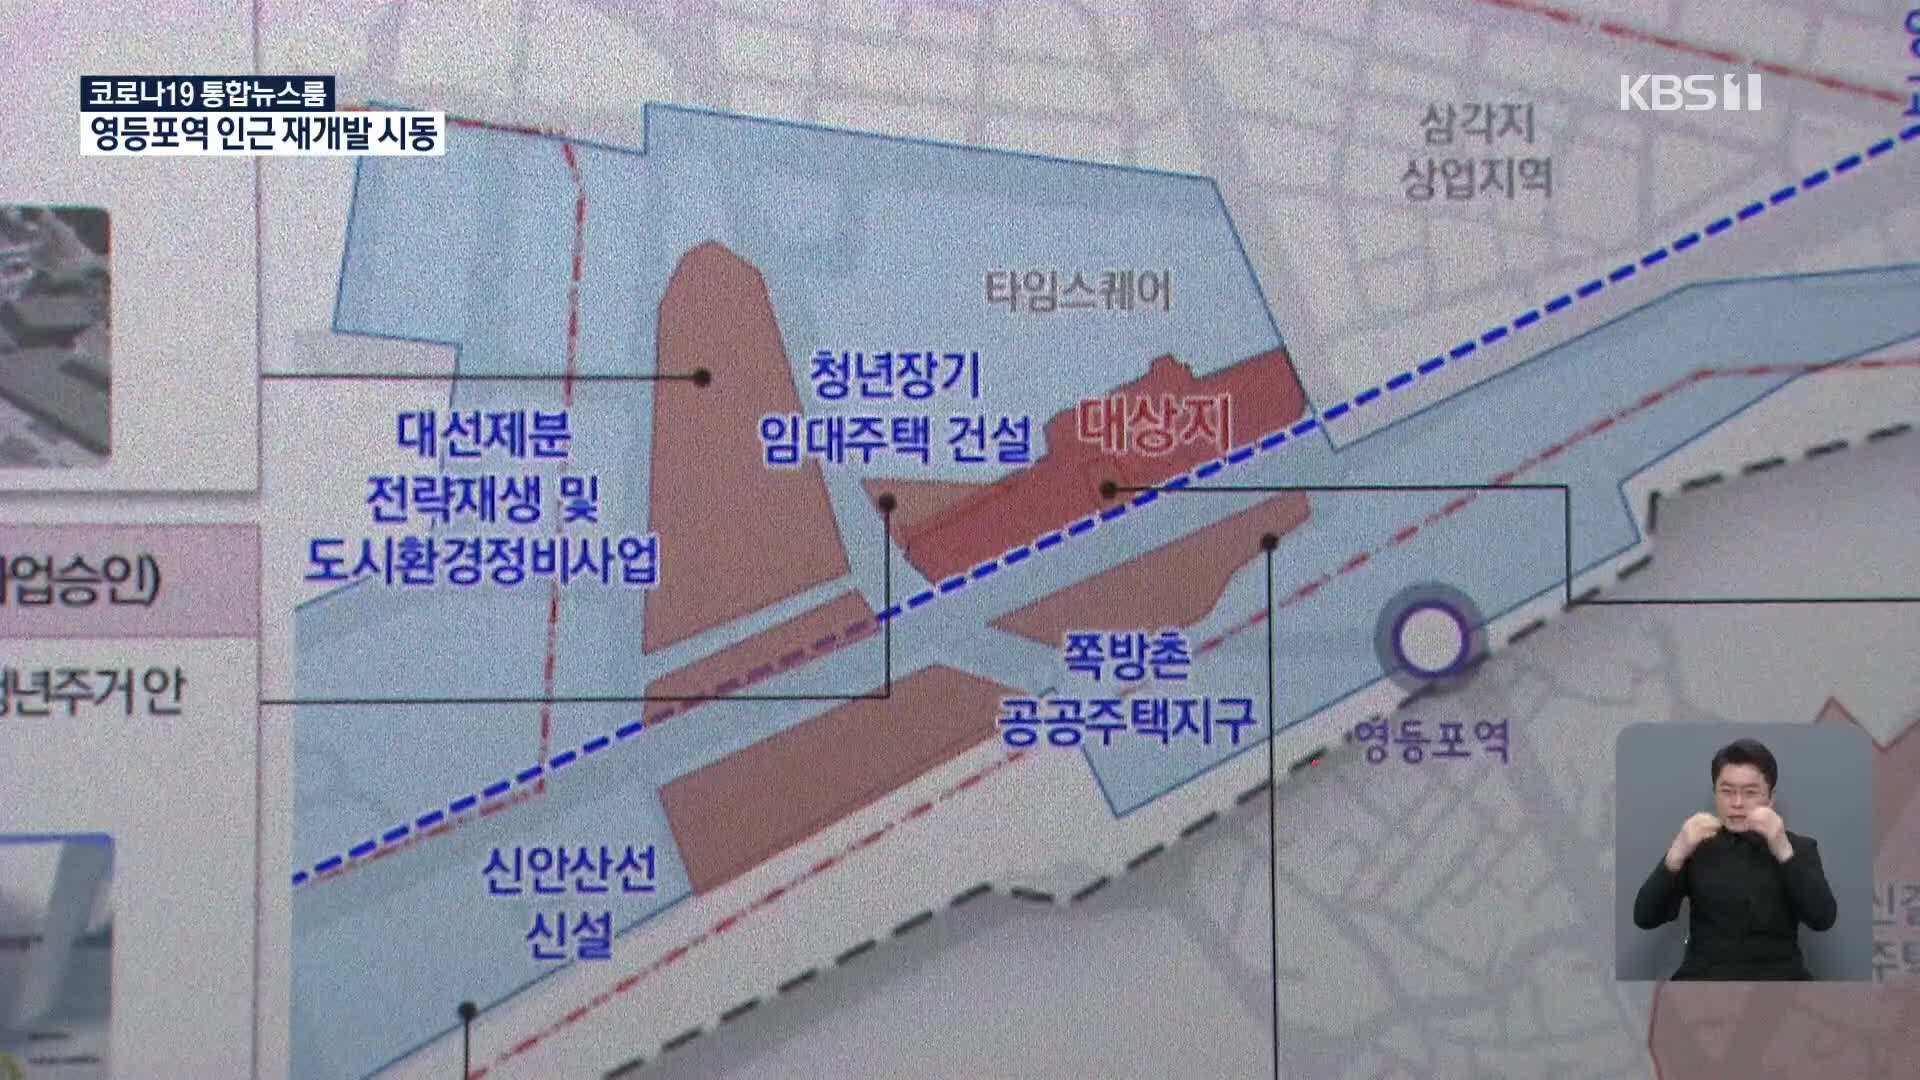 서울 마지막 성매매 집결지도 재개발…3대 도심 옛 영광 회복?